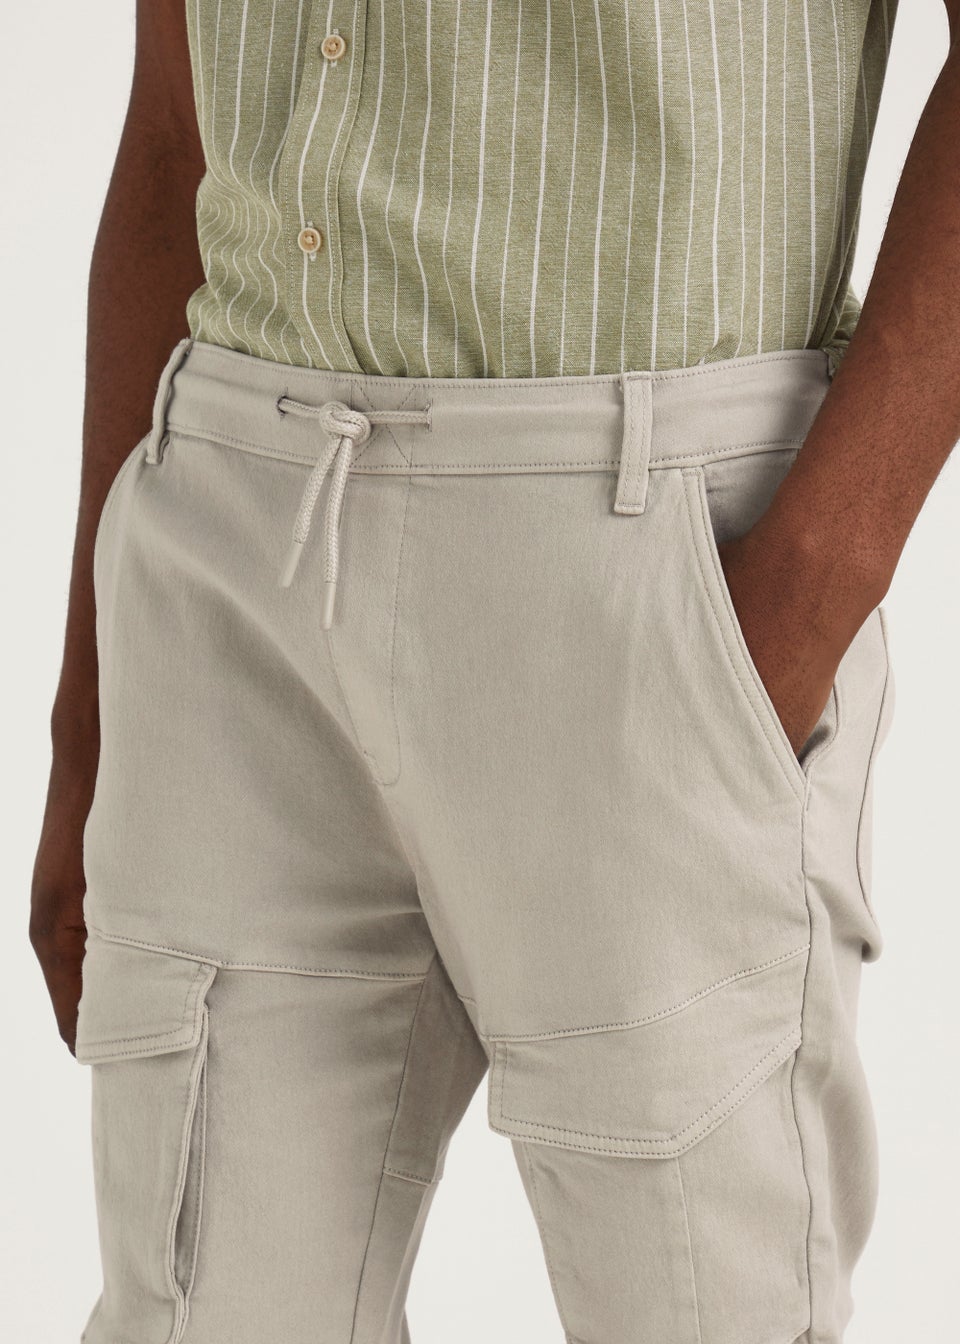 Shop Matalan Men's Trousers | DealDoodle